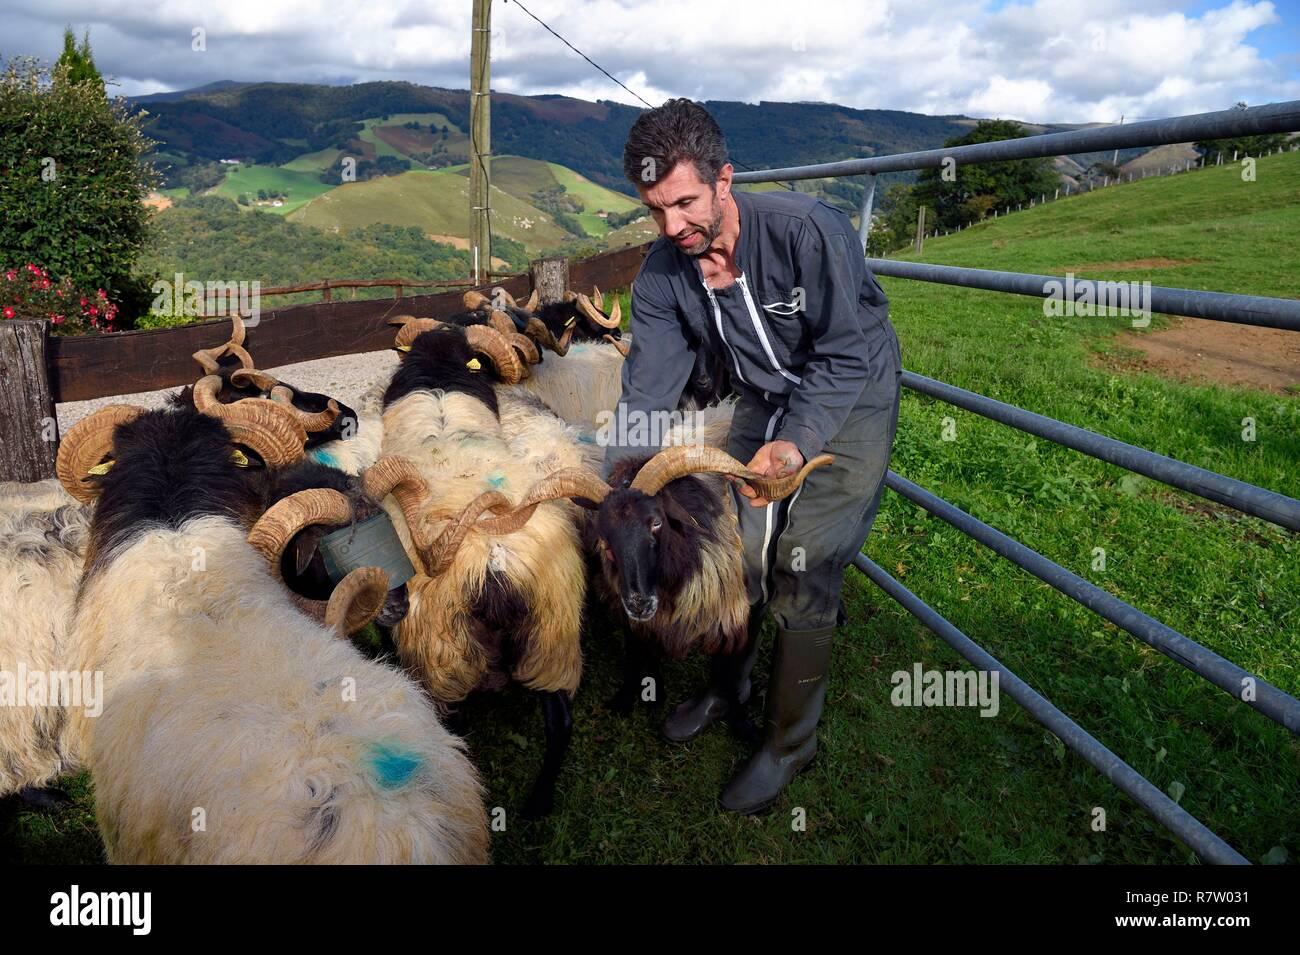 France, Pyrénées Atlantiques, Pays Basque, vallée des Aldudes, d'Urepel, Philippe Casiriain Manech tête noire eleveuse de moutons Banque D'Images